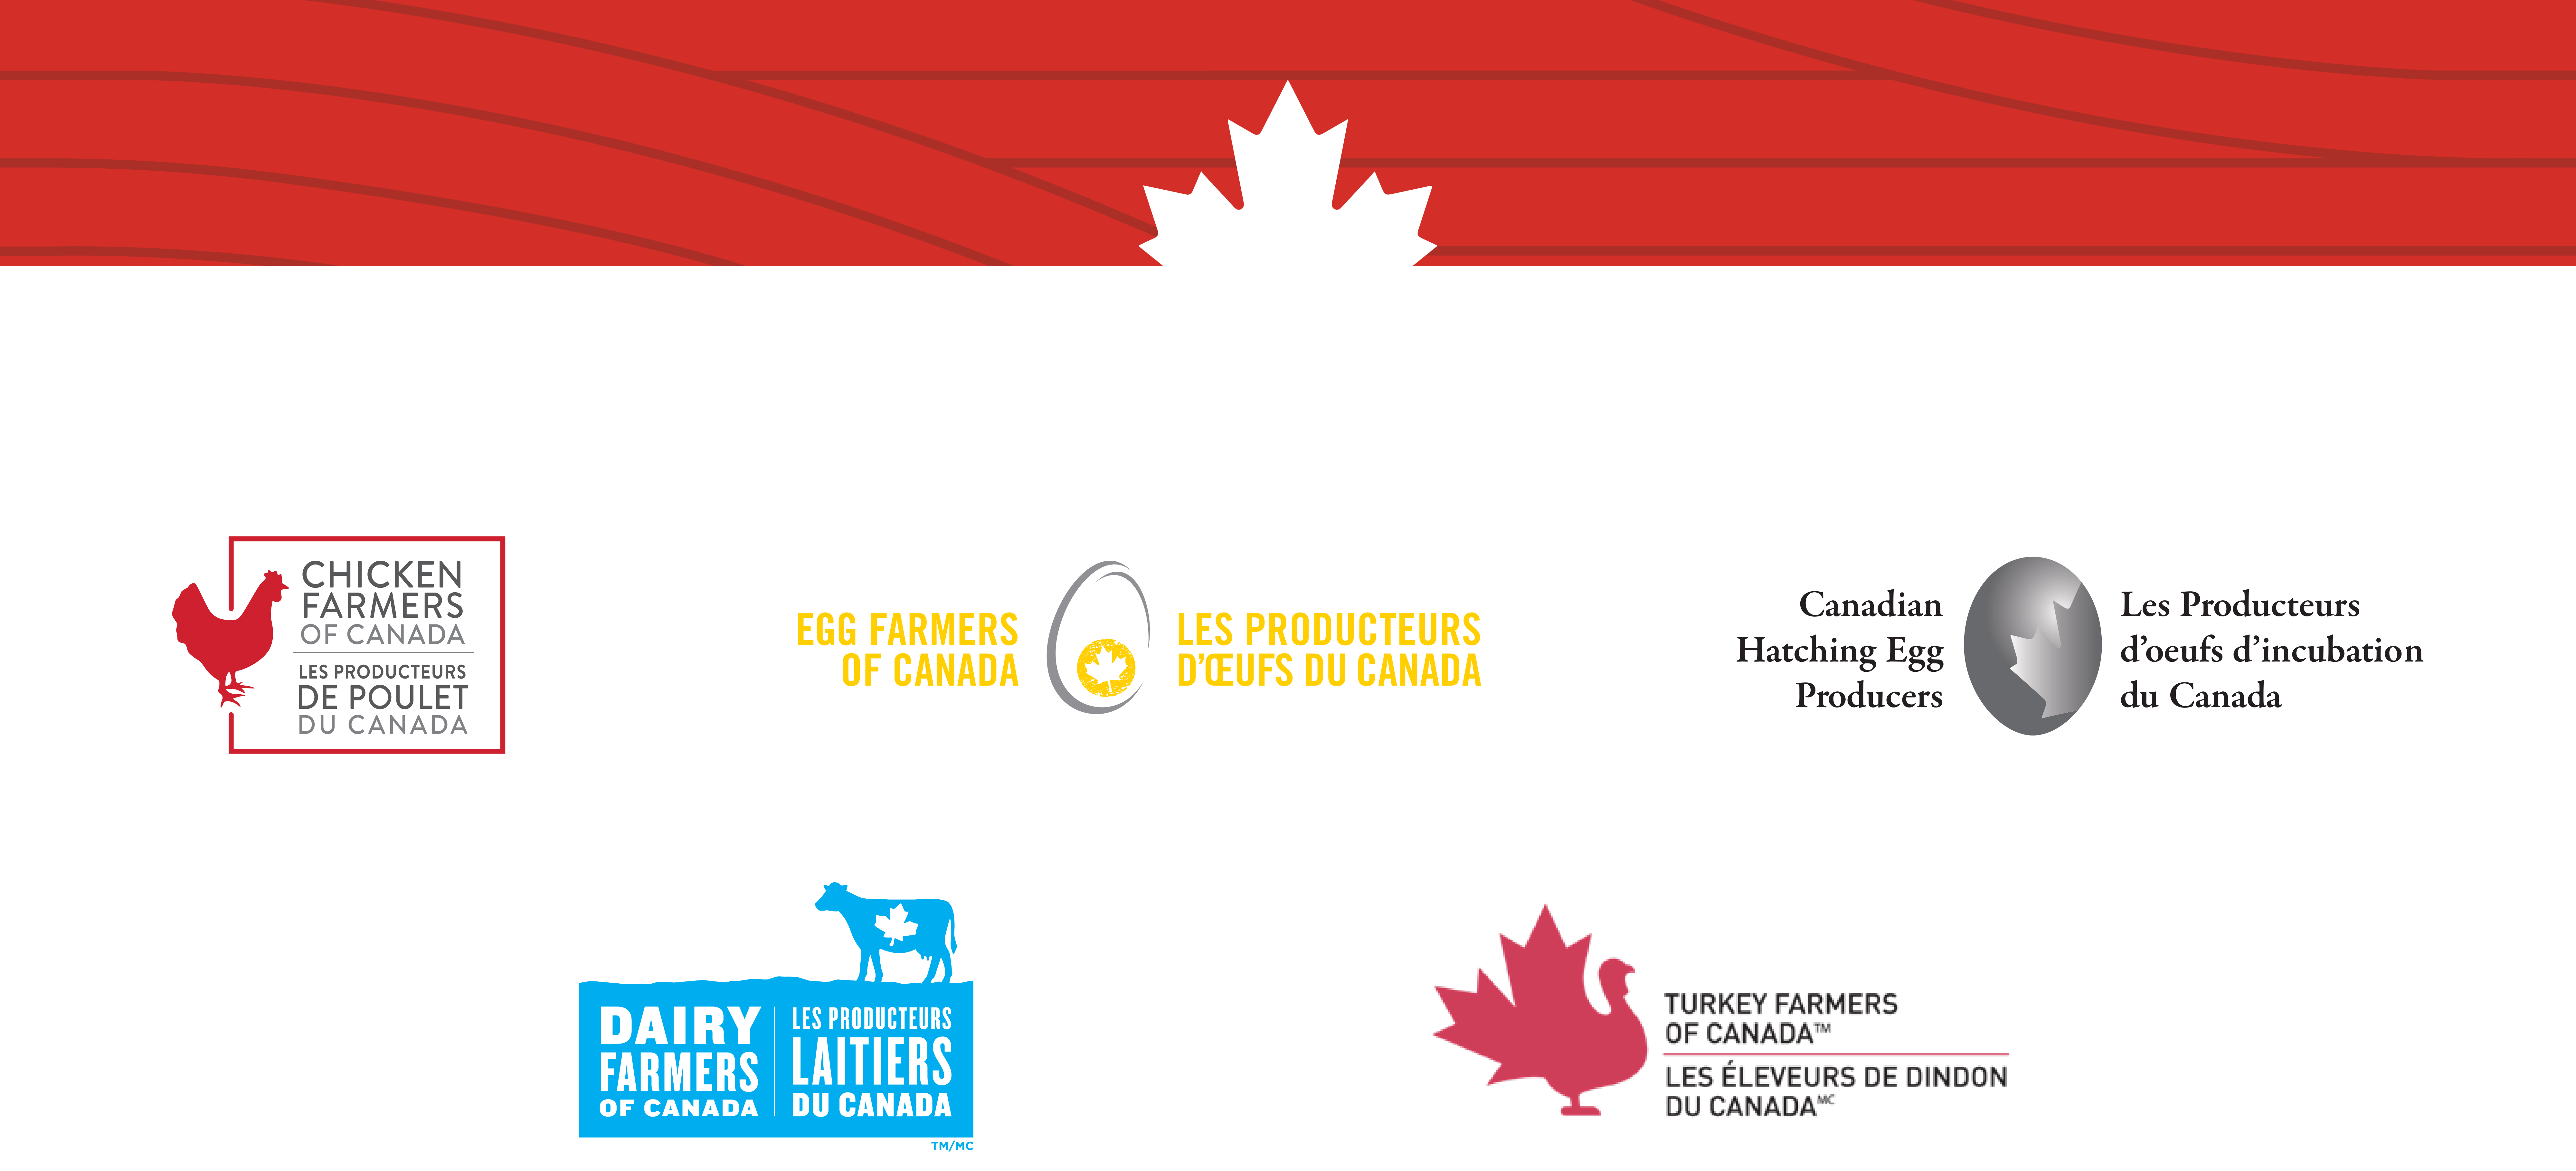 Les Producteurs d'œufs du Canada, Les Producteurs de poulet du Canada, Les Éleveurs de dindon du Canada, Les Producteurs d'œufs d'incubation du Canada, Producteurs laitiers du Canada